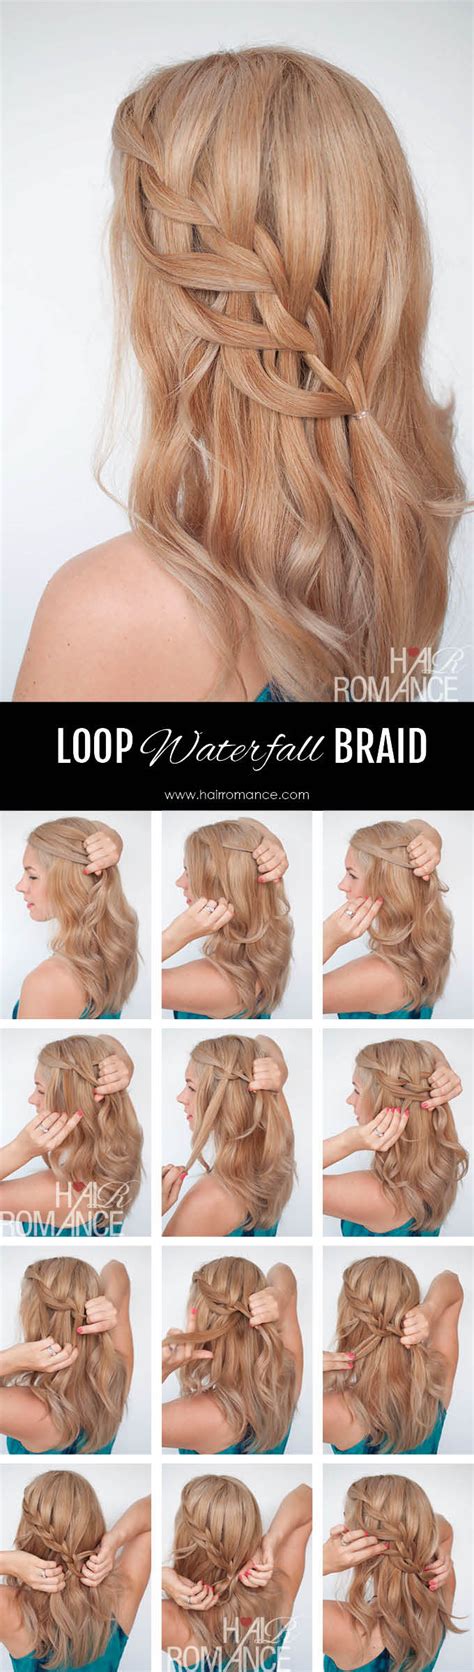 loop waterfall braid tutorial